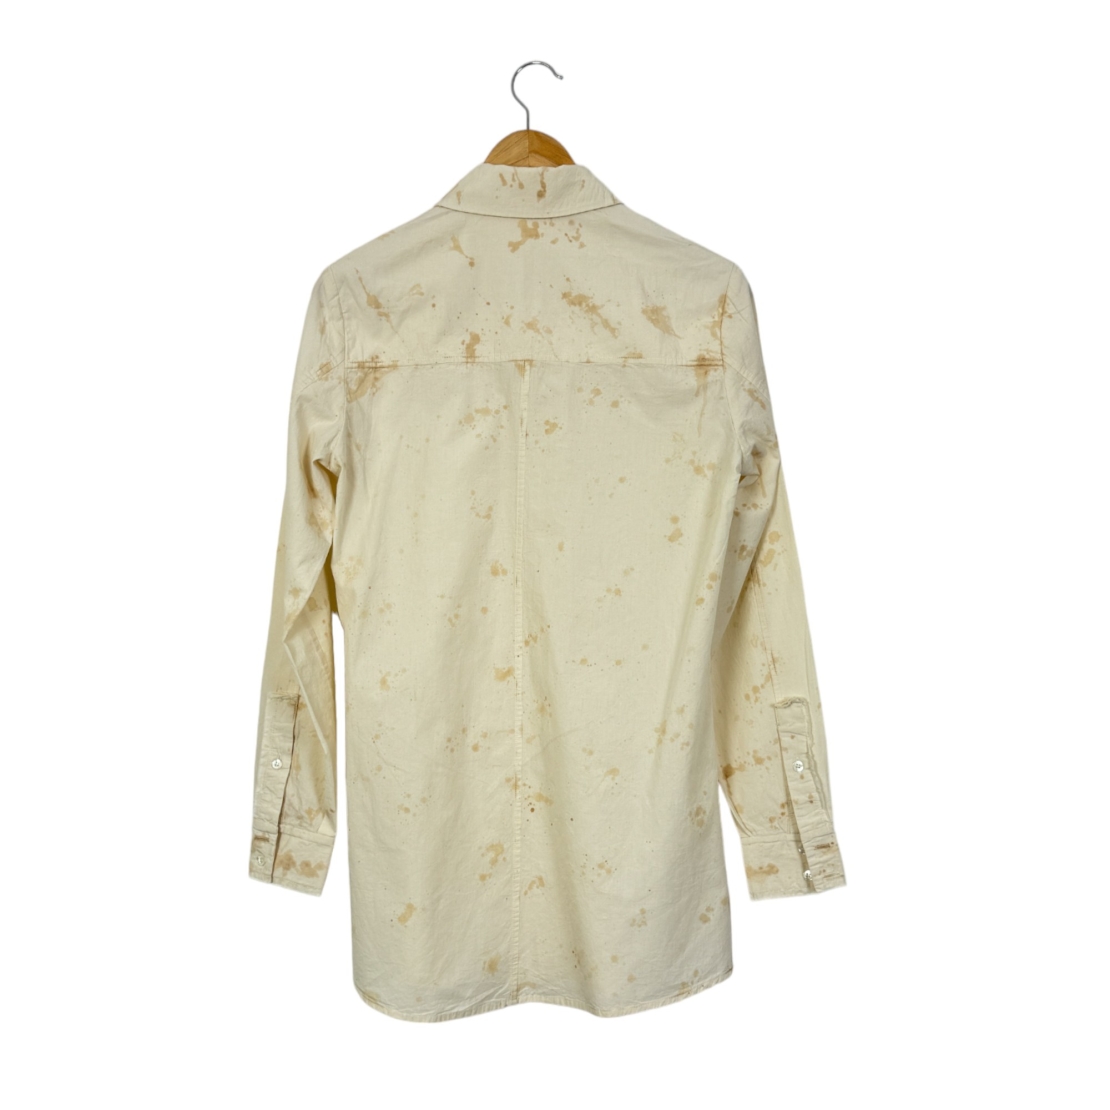 Дамска риза с петна от чай Aleksandr Manamis shirt with tea stains